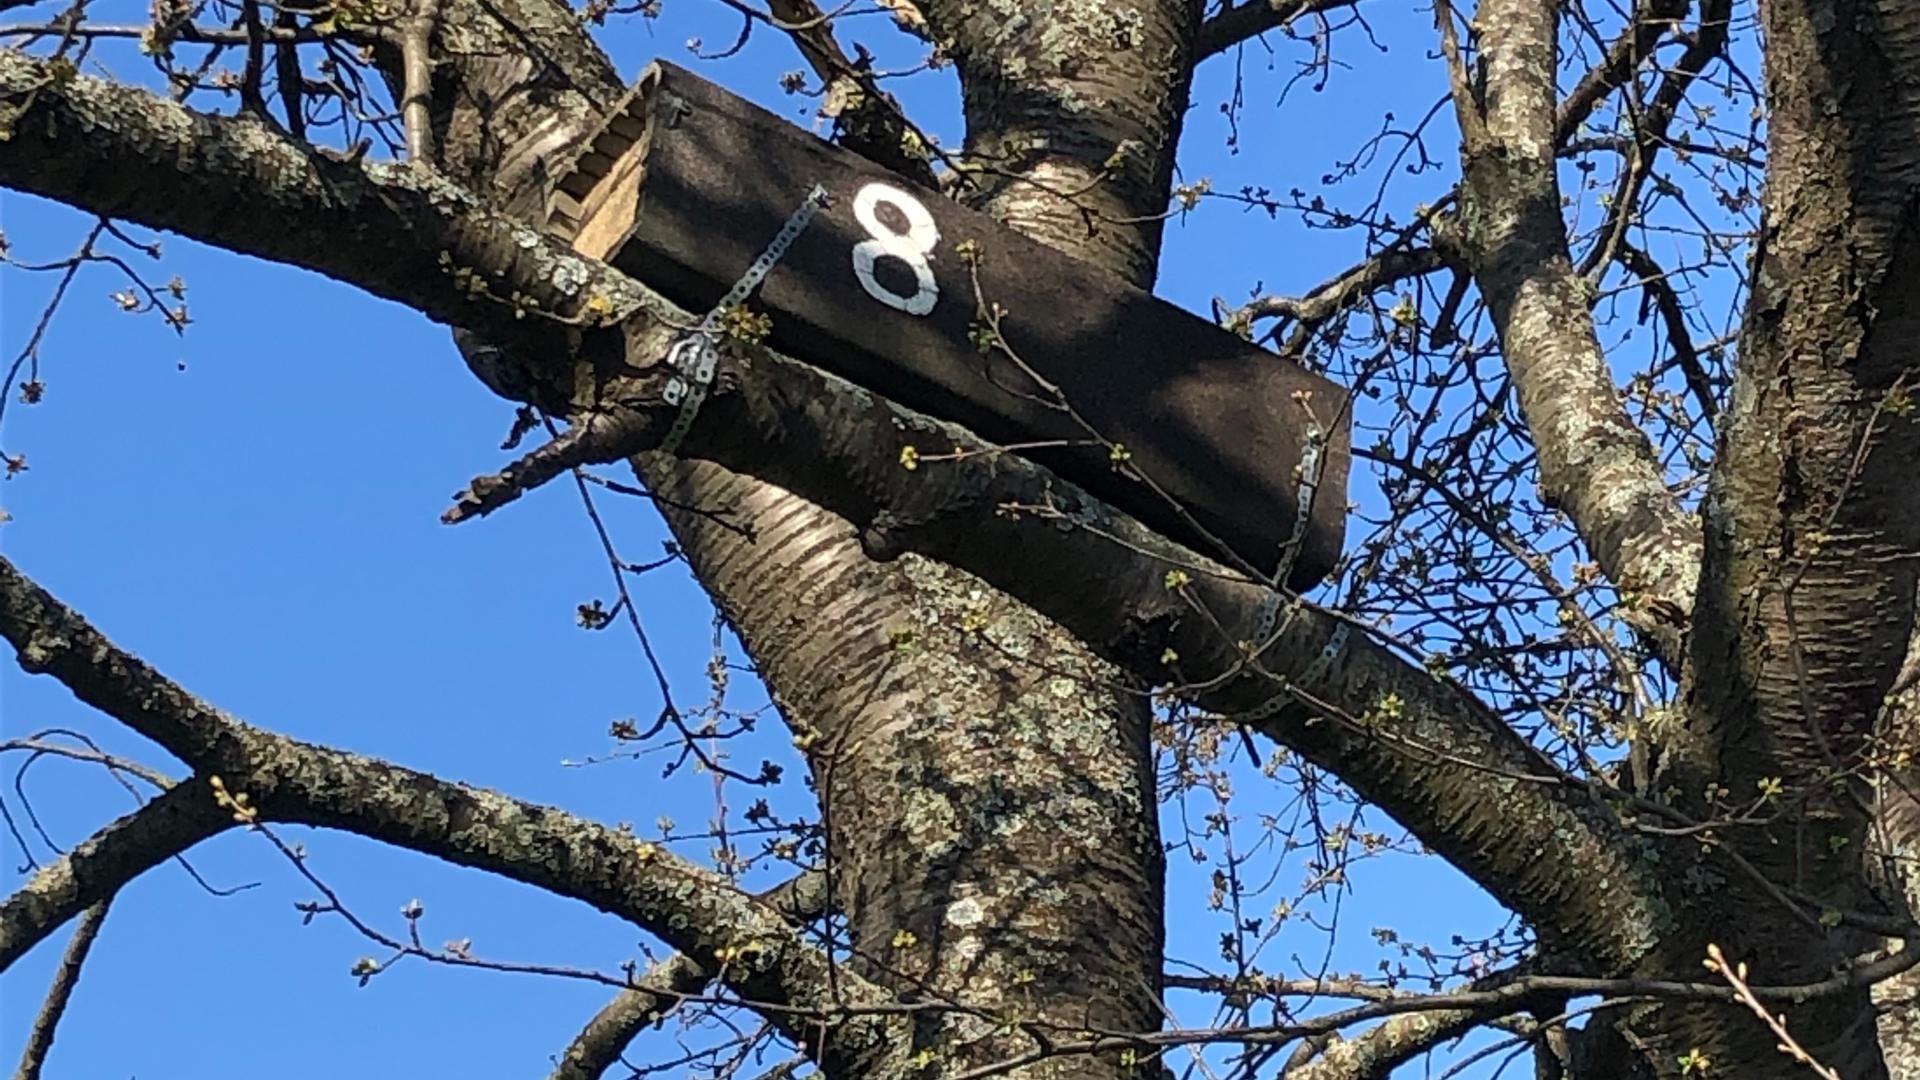 Nistkasten am Baum: Die hölzerne Box, die an einem Baum in Langensteinbach befestigt ist, gab Bernard Salay und seine Freundin beim gemeinsamen Spaziergang.